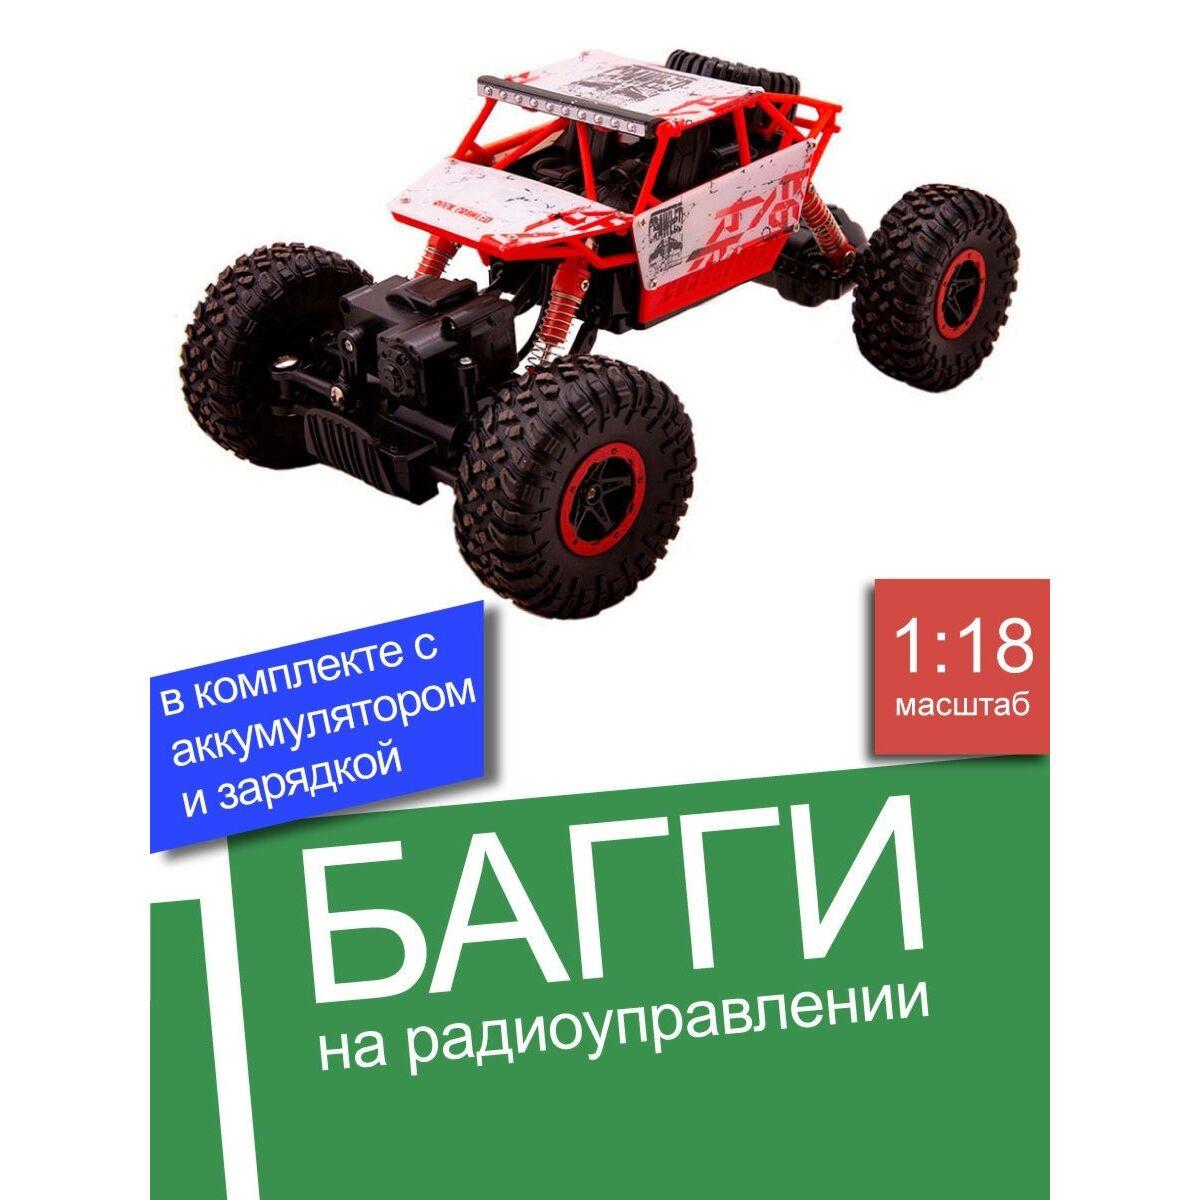 HB: Радиоуправляемая машинка багги на пульте управления, красный, 1:18, фото 1